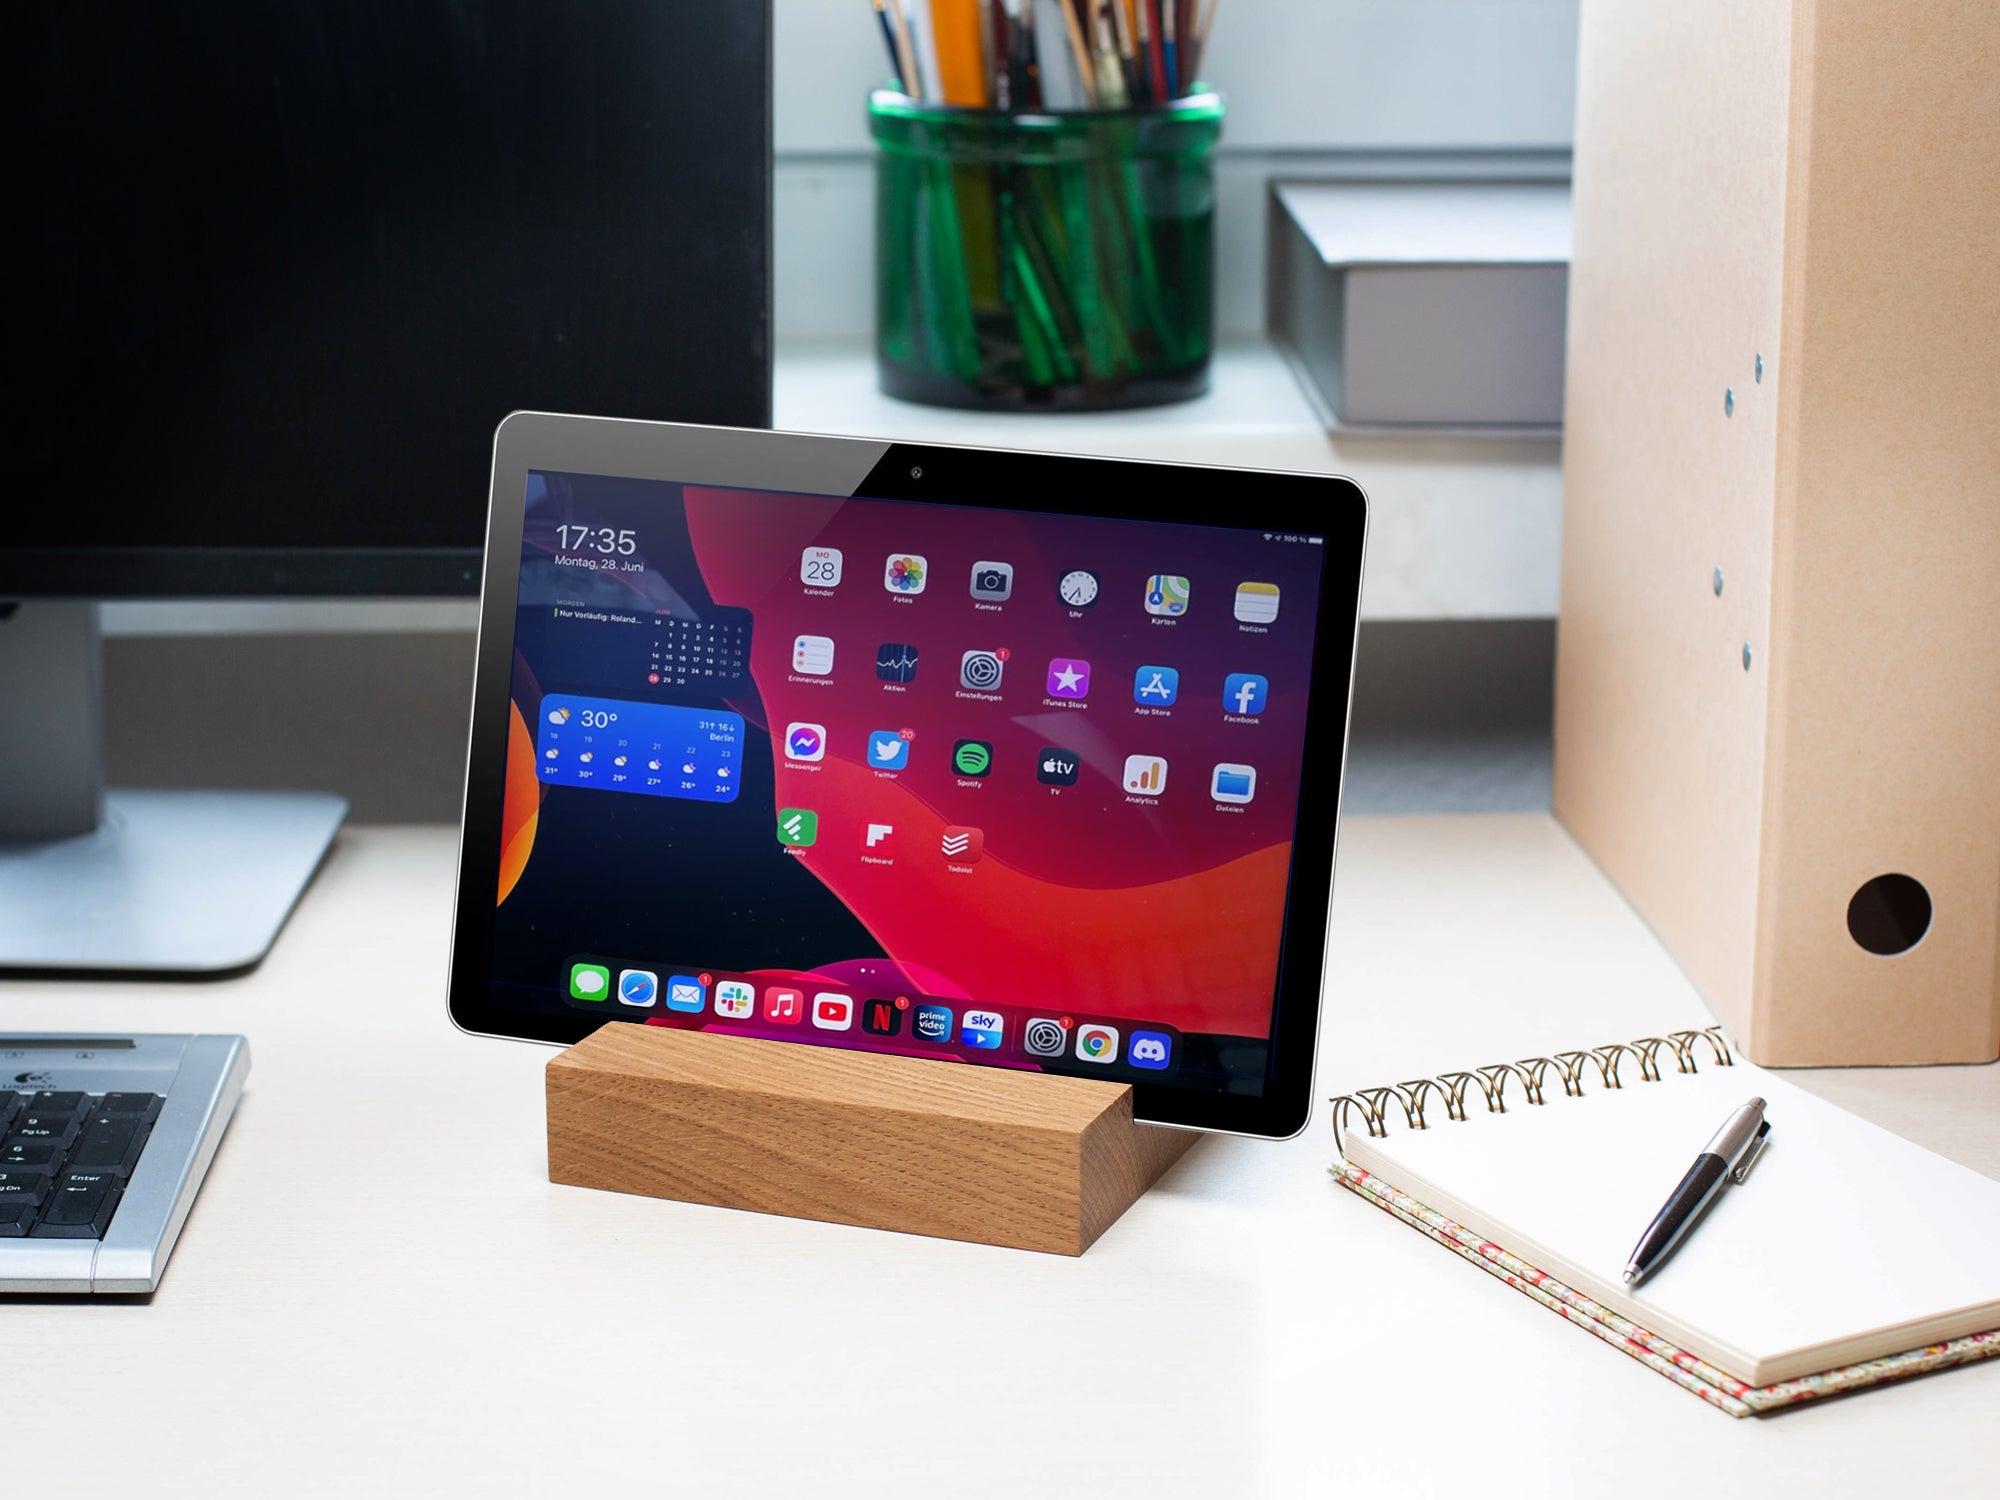 Rikmani Tablet Ständer aus Holz iPad Ständer, Tablettenständer Schreibtischzubehör aus Massivholz Eiche